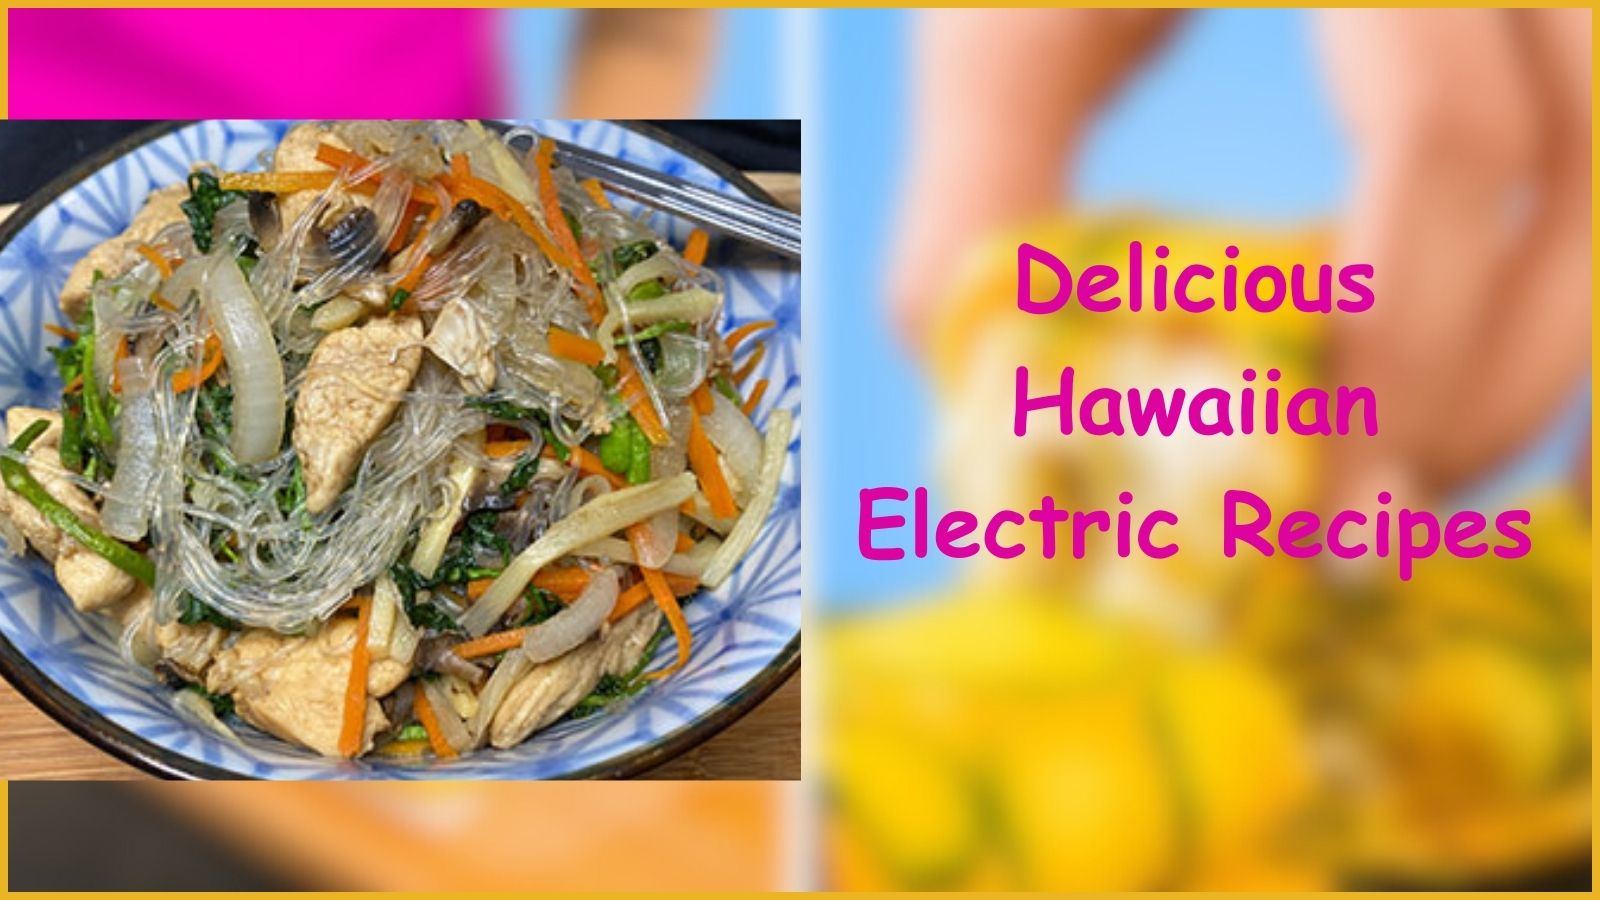 Delicious Hawaiian Electric Recipes